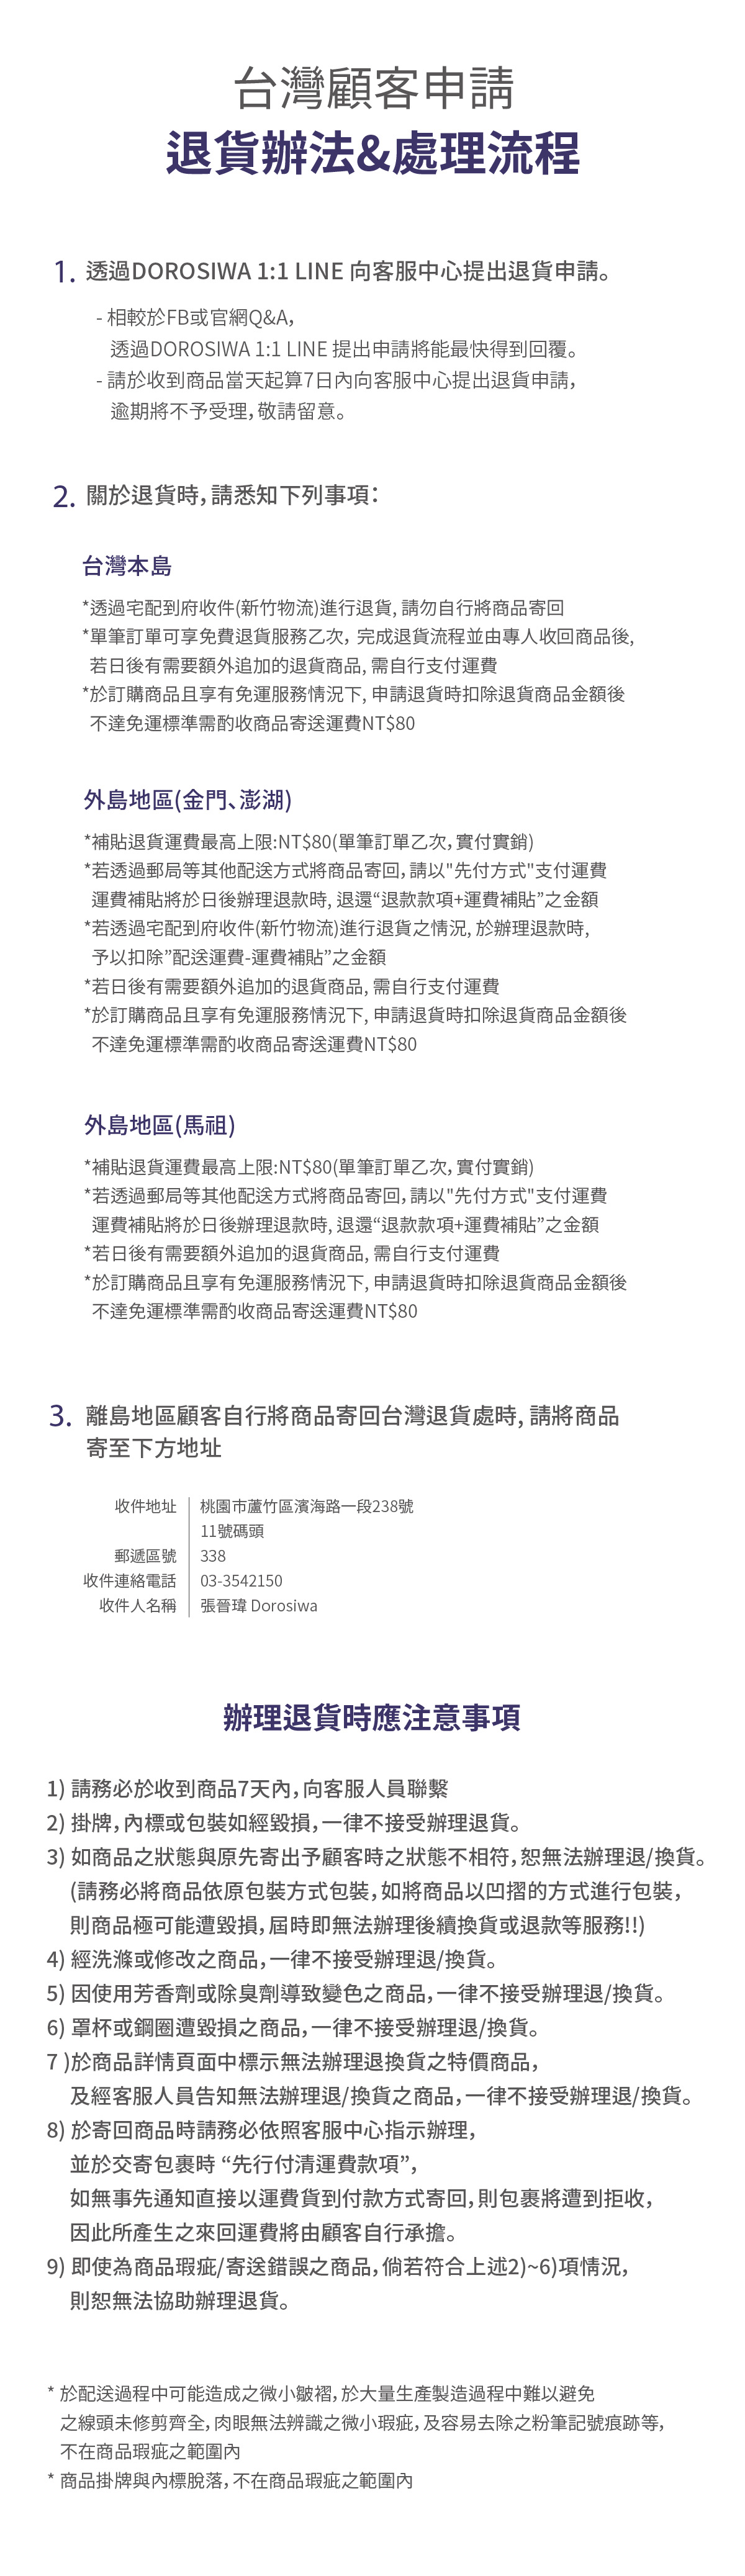 【重要公告】[台灣] 敬請詳閱以下退貨辦法&處理流程